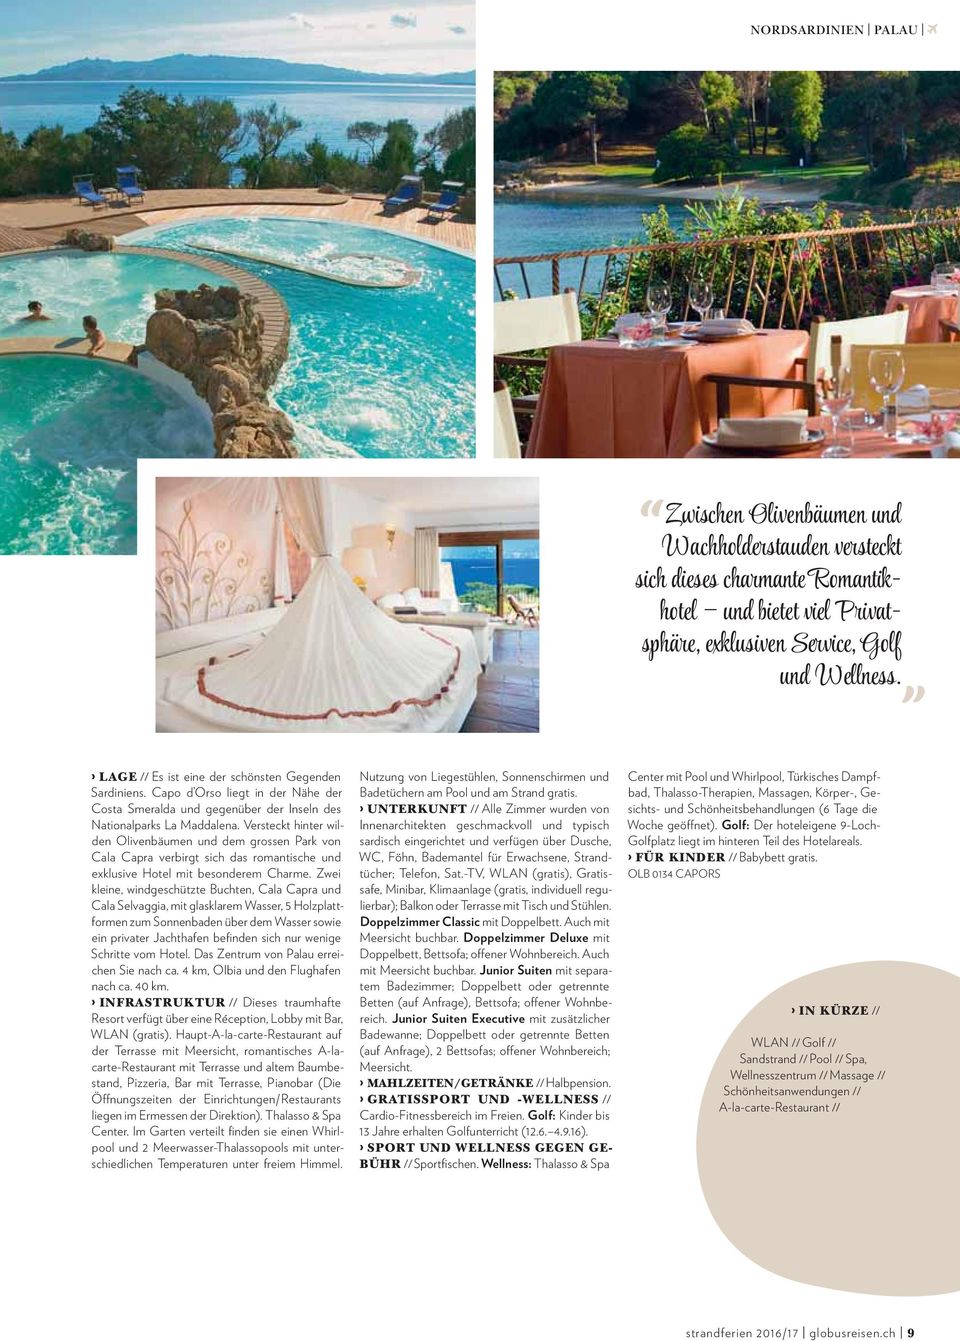 Versteckt hinter wilden Olivenbäumen und dem grossen Park von Cala Capra verbirgt sich das romantische und exklusive Hotel mit besonderem Charme.